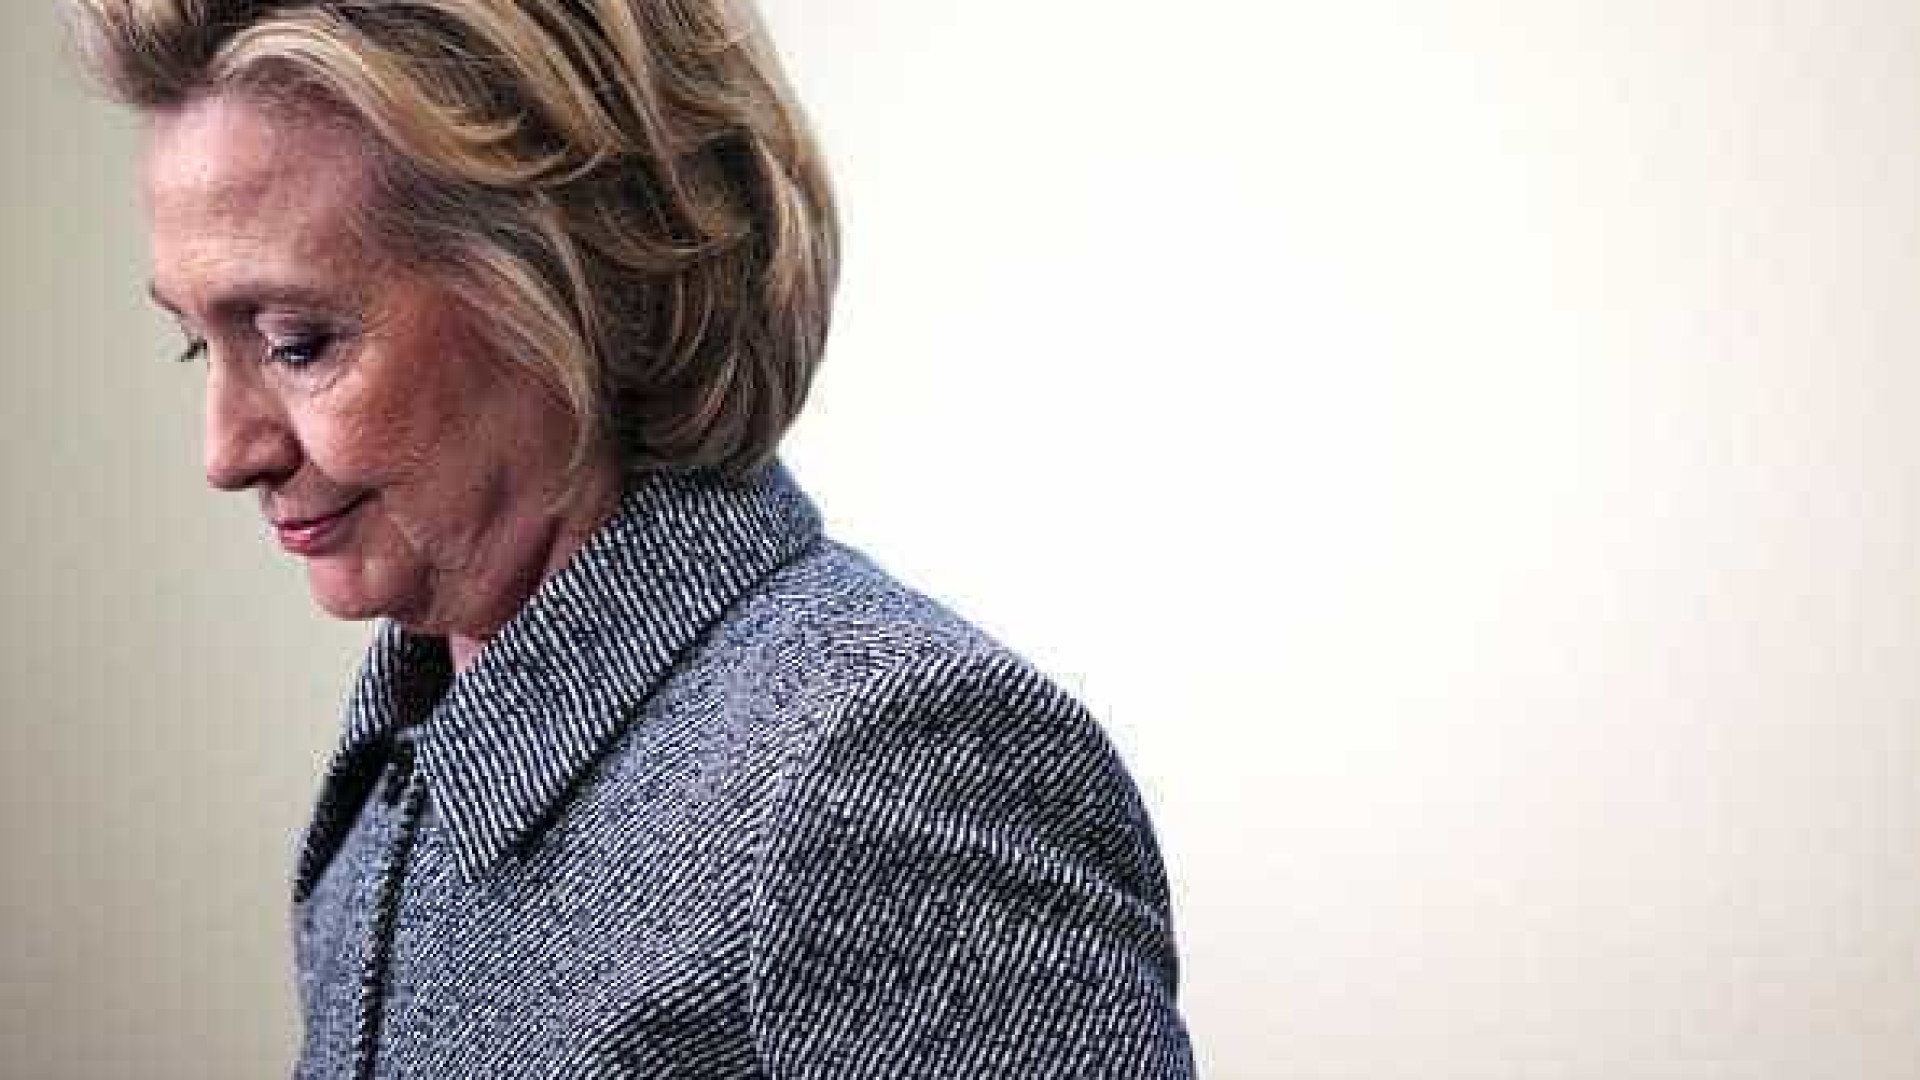 Mandado do FBI permite investigação
a e-mails de Hillary